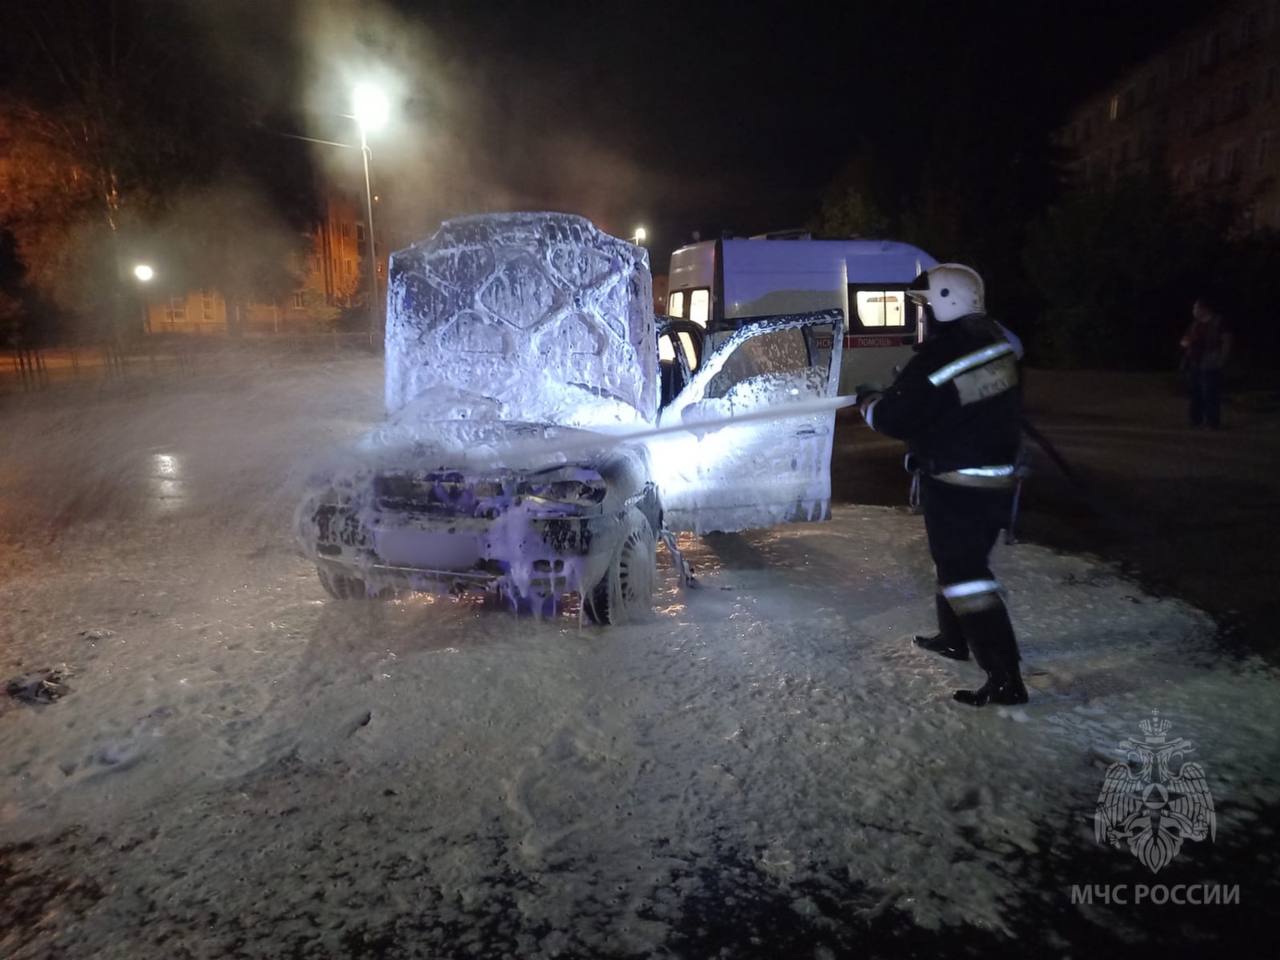 Пожарные в Ивановской области спасли мужчину из горящего автомобиля